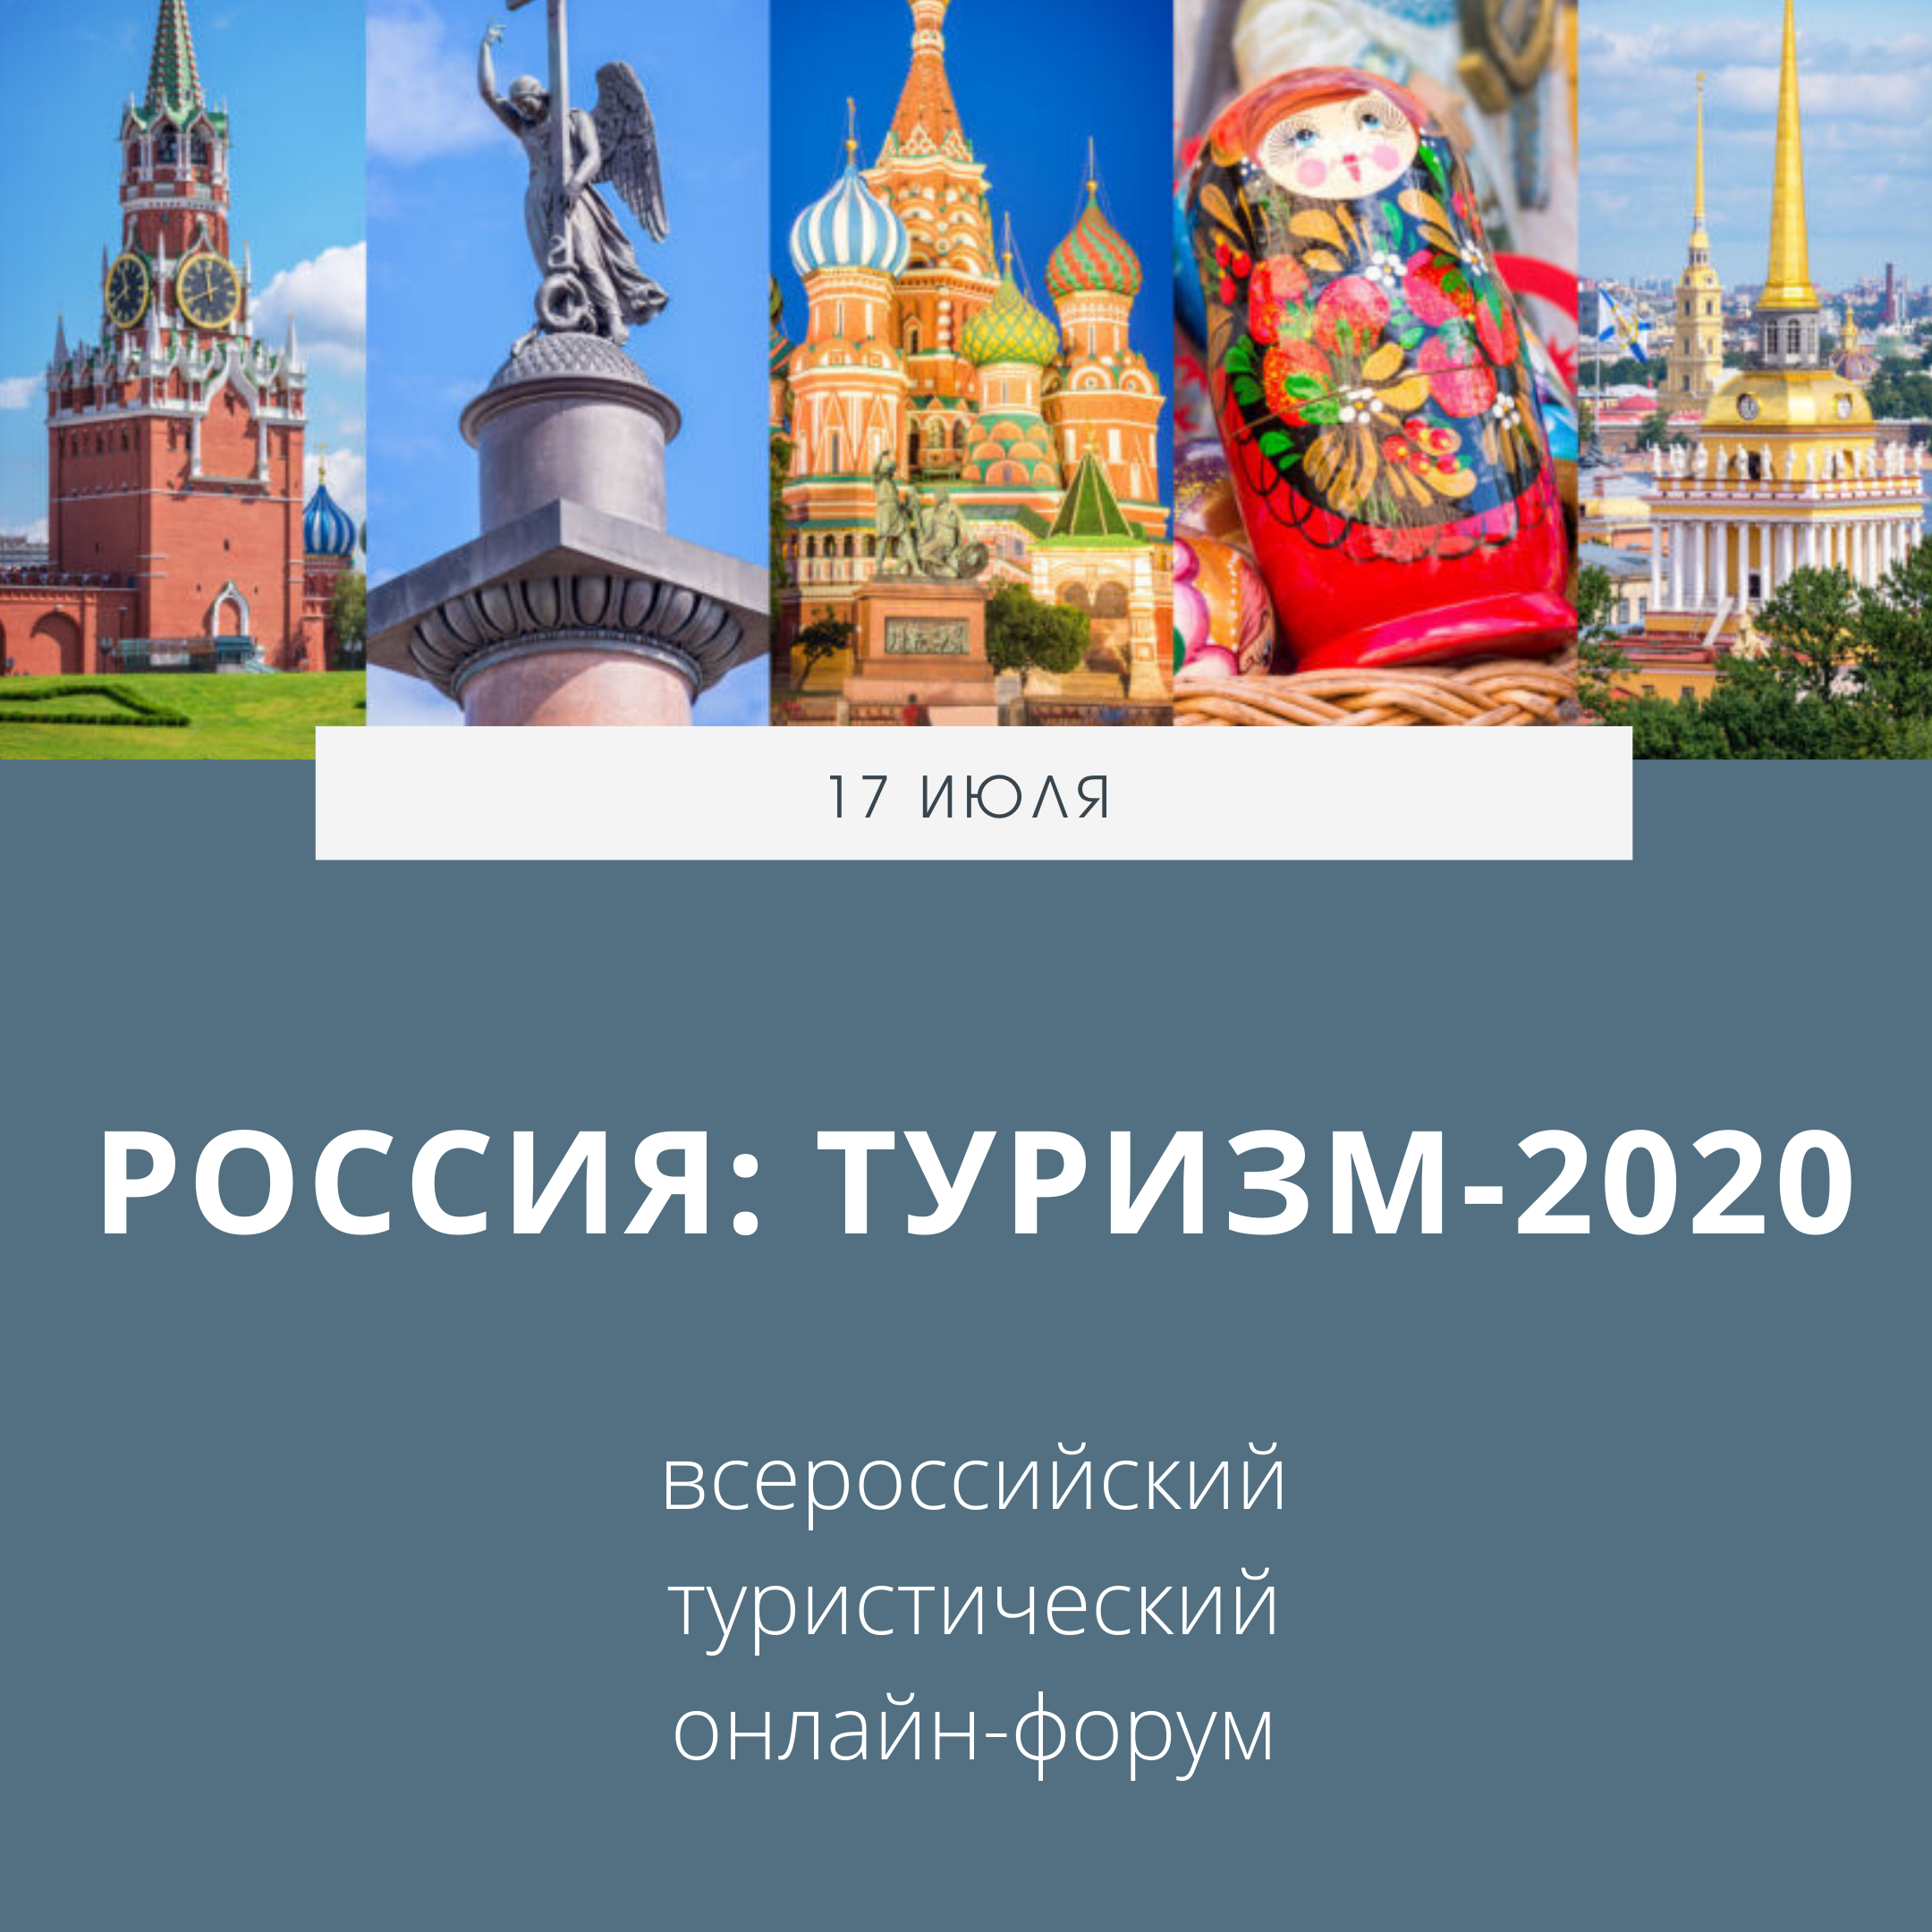 17 июля состоится Всероссийский туристический онлайн-форум «Россия: Туризм-2020»